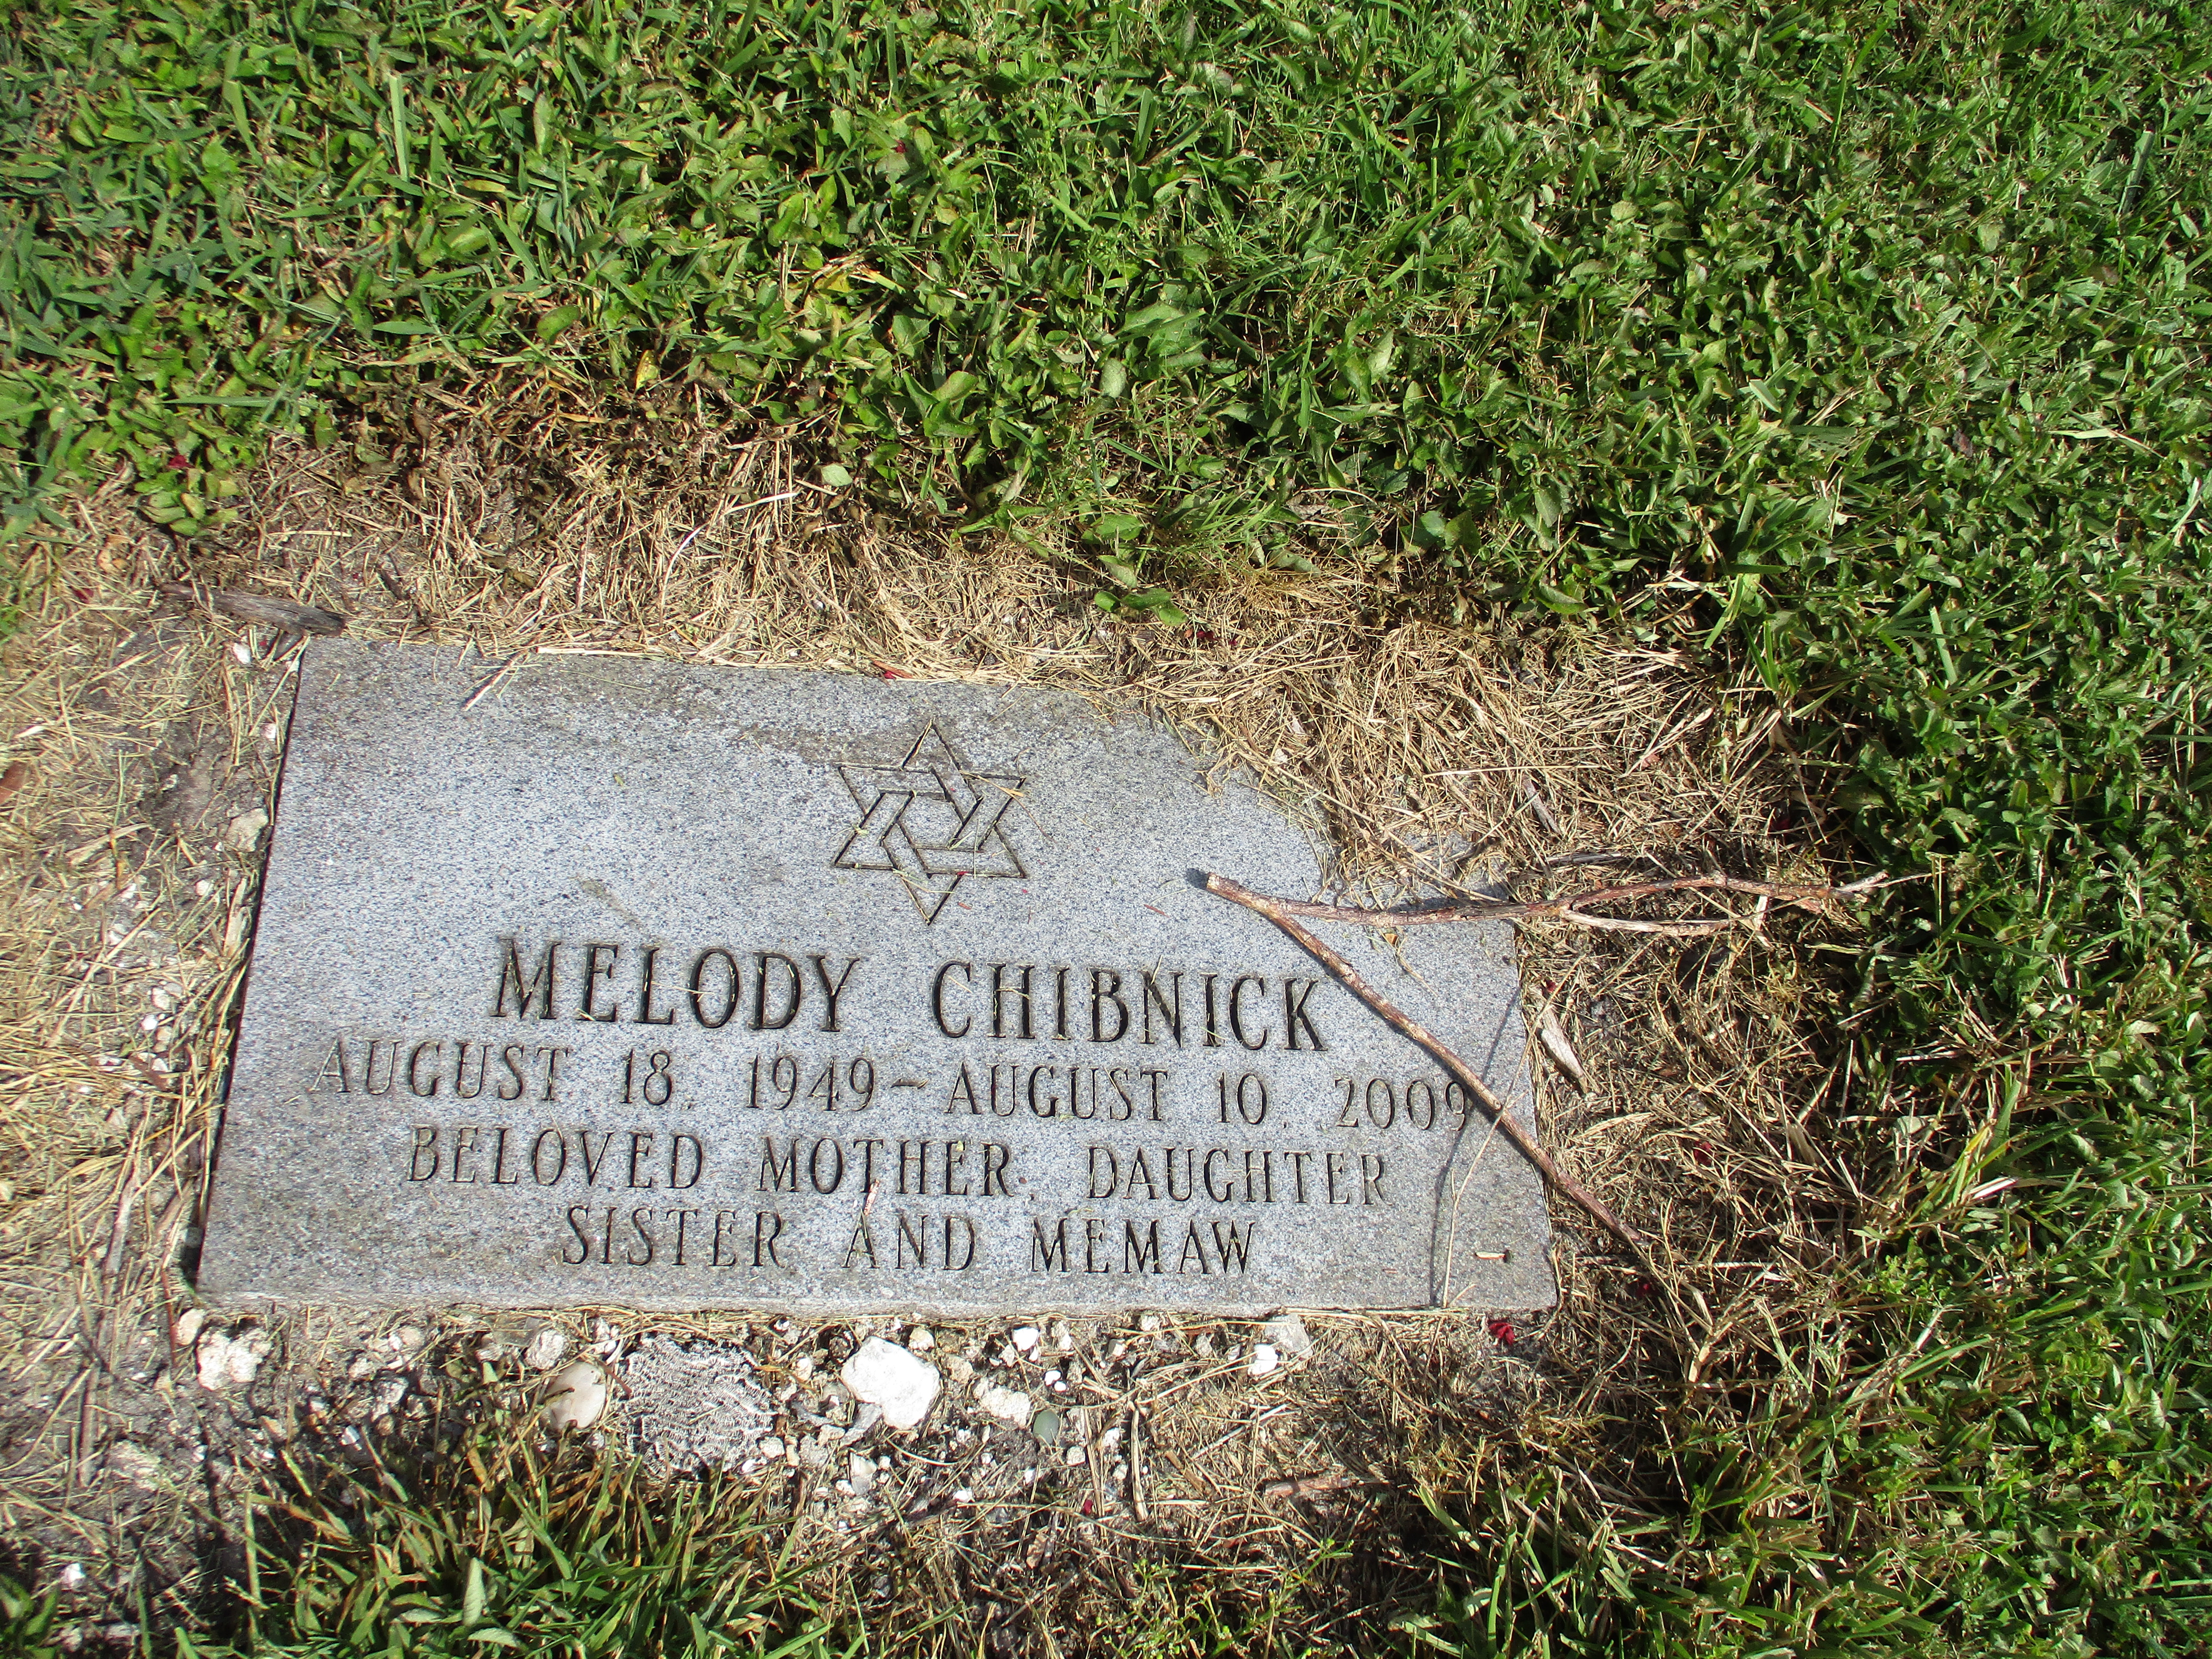 Melody Chibnick